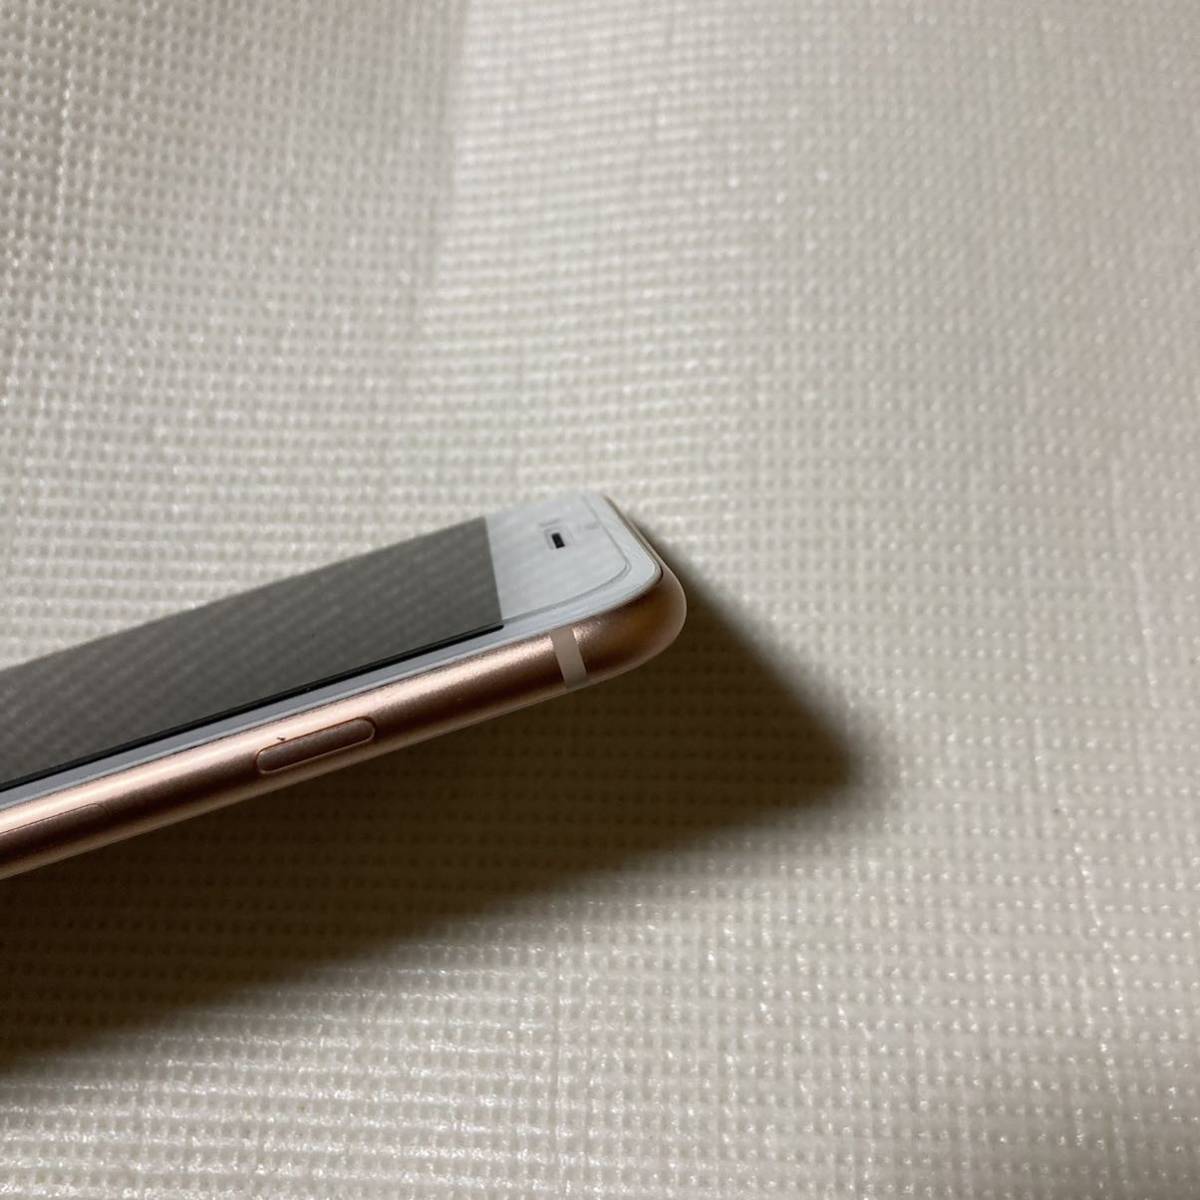 送料無料 美品 SIMフリー iPhone8 256GB ゴールド バッテリー最大容量100% SIMロック解除済